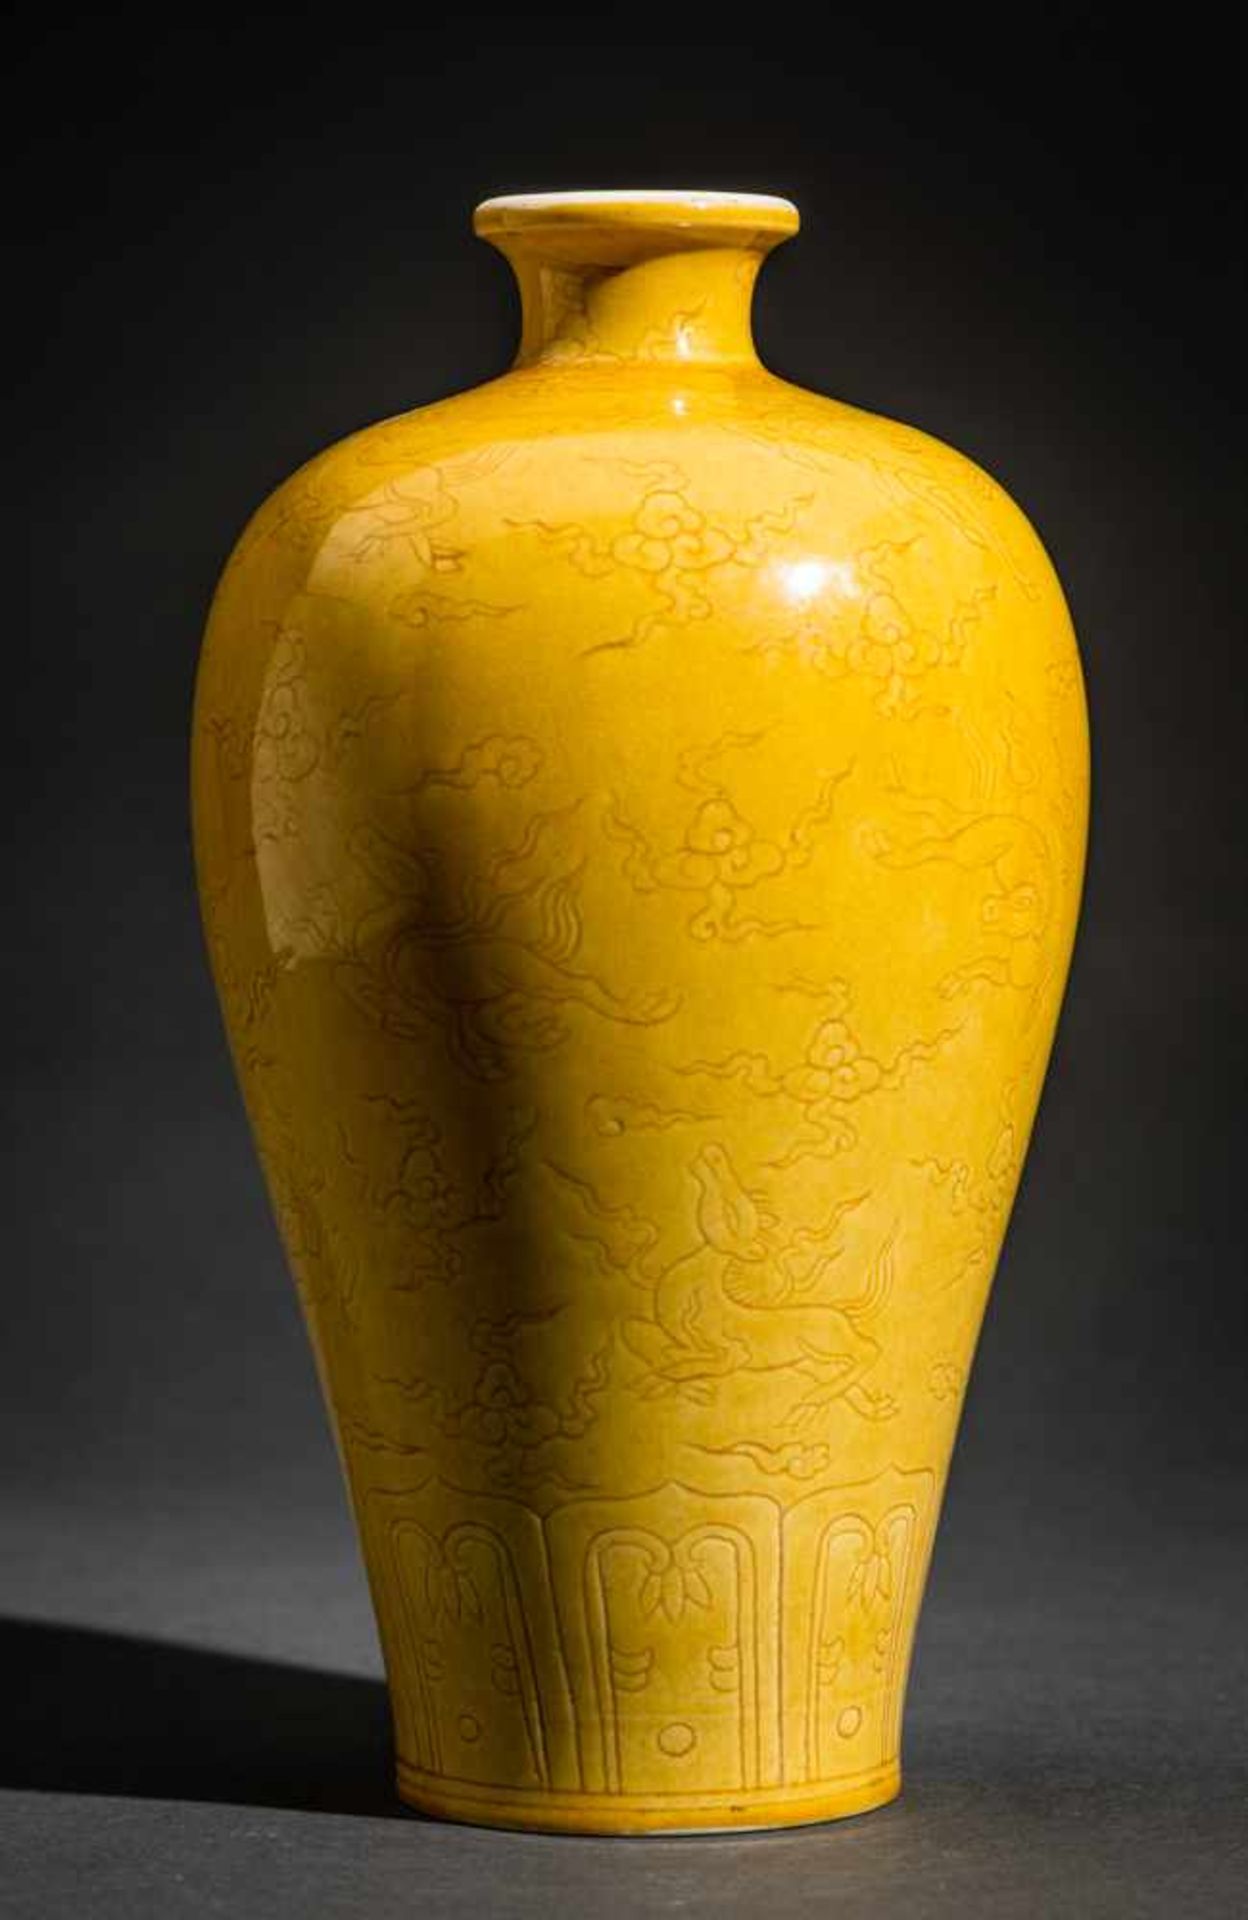 SCHULTERVASE MIT HIMMELSPFERDENKaisergelbes Porzellan, China. Vase in der Meiping-Form mit